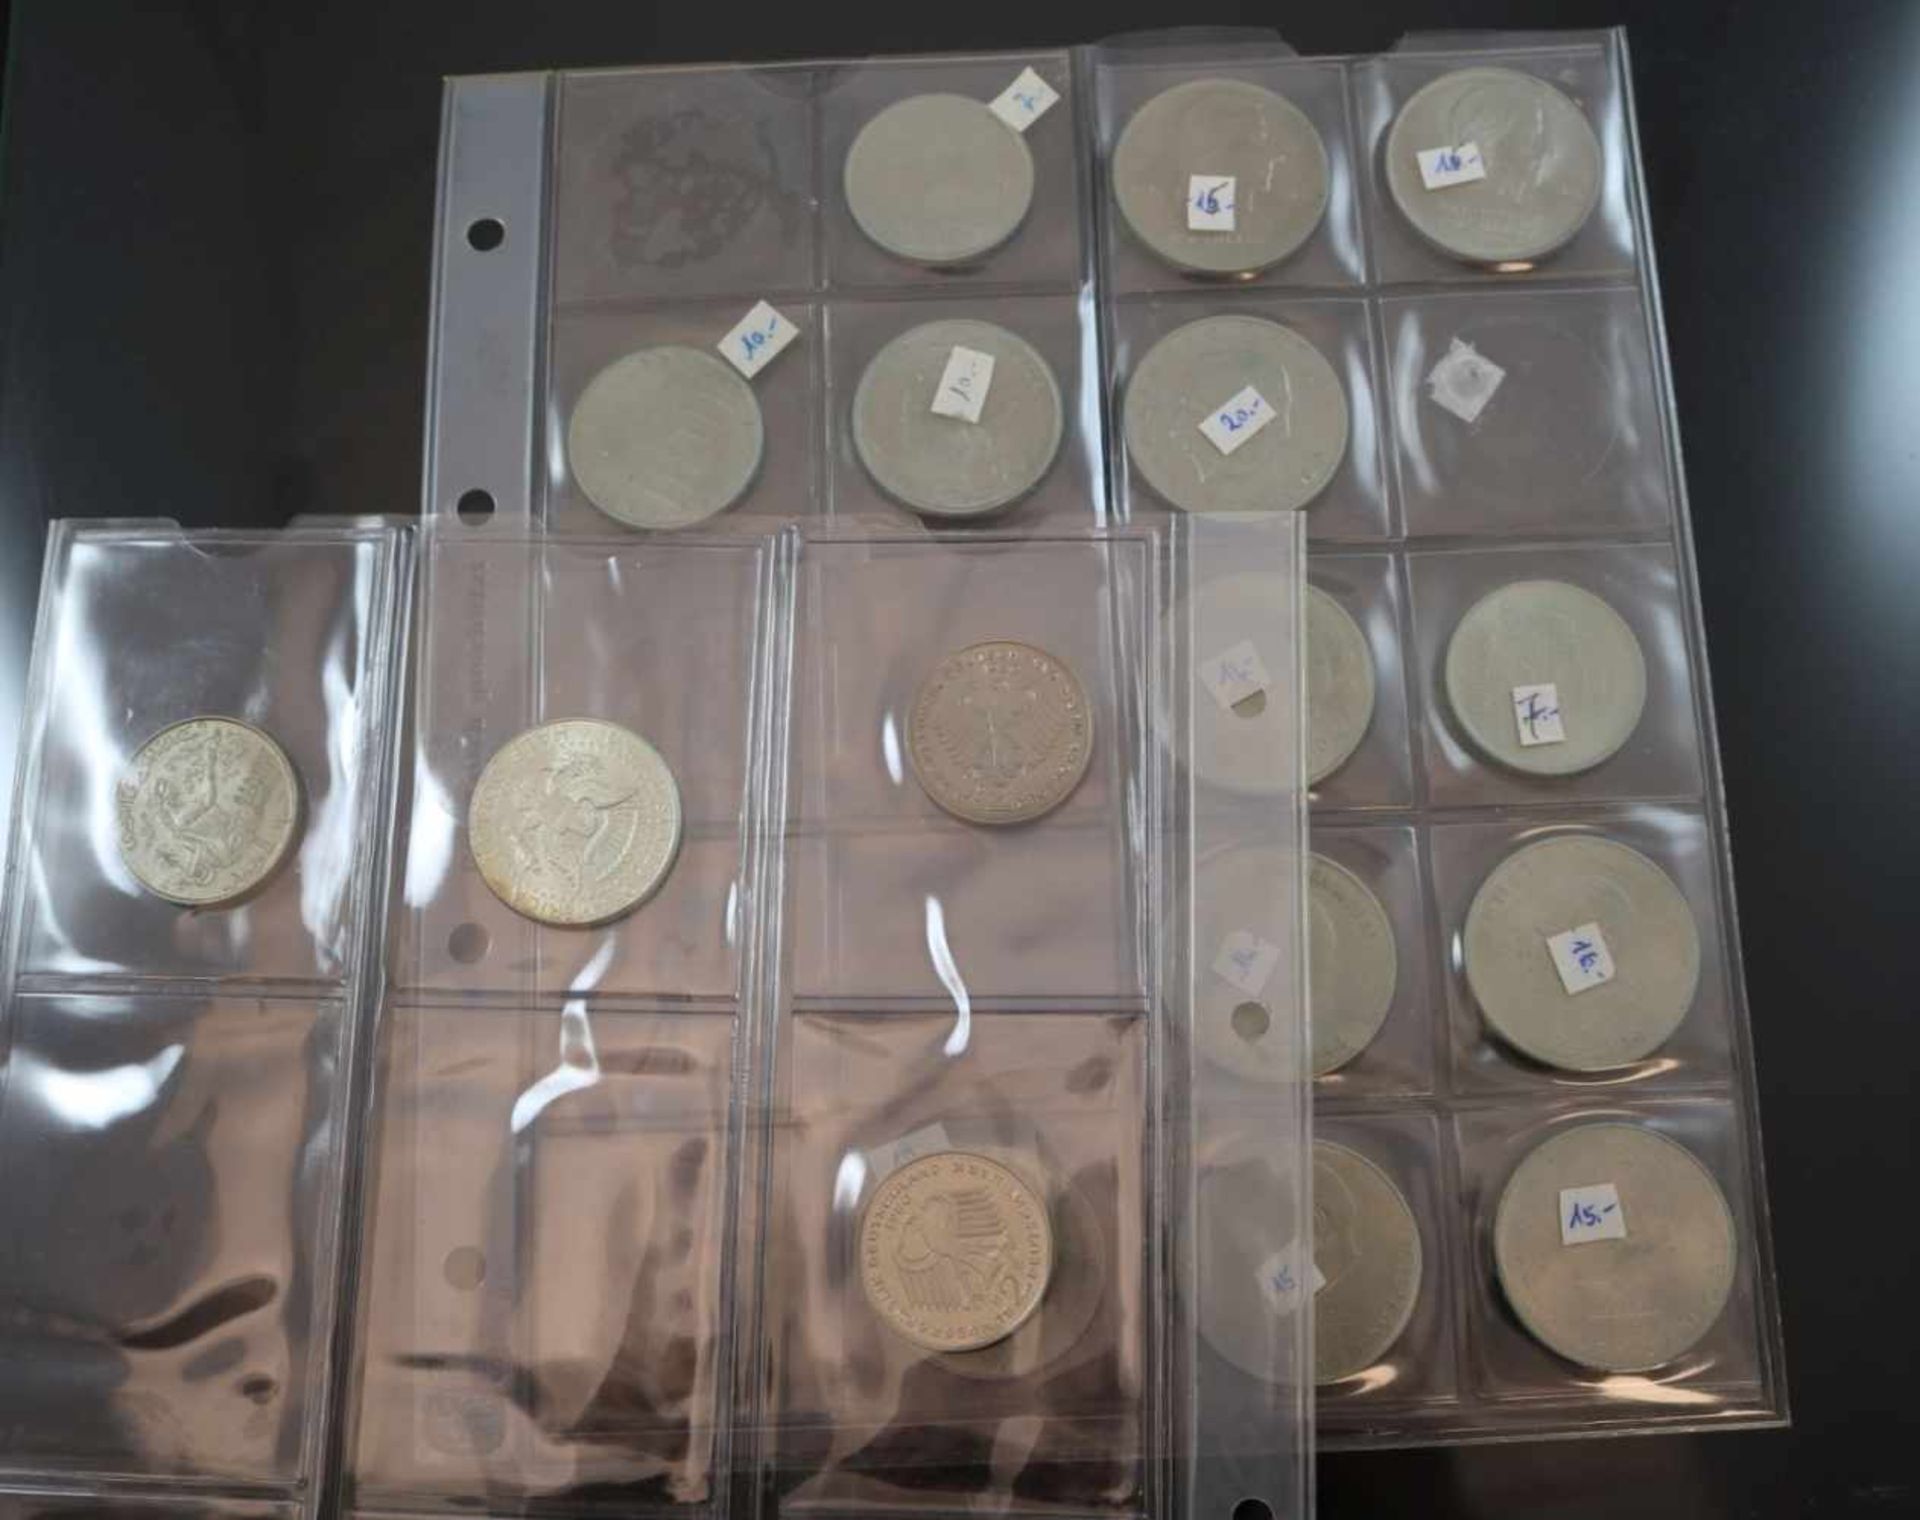 Münz-Konvolut17 Münzen diverser Währungen und Jahrgänge.- - -25.00 % buyer's premium on the hammer